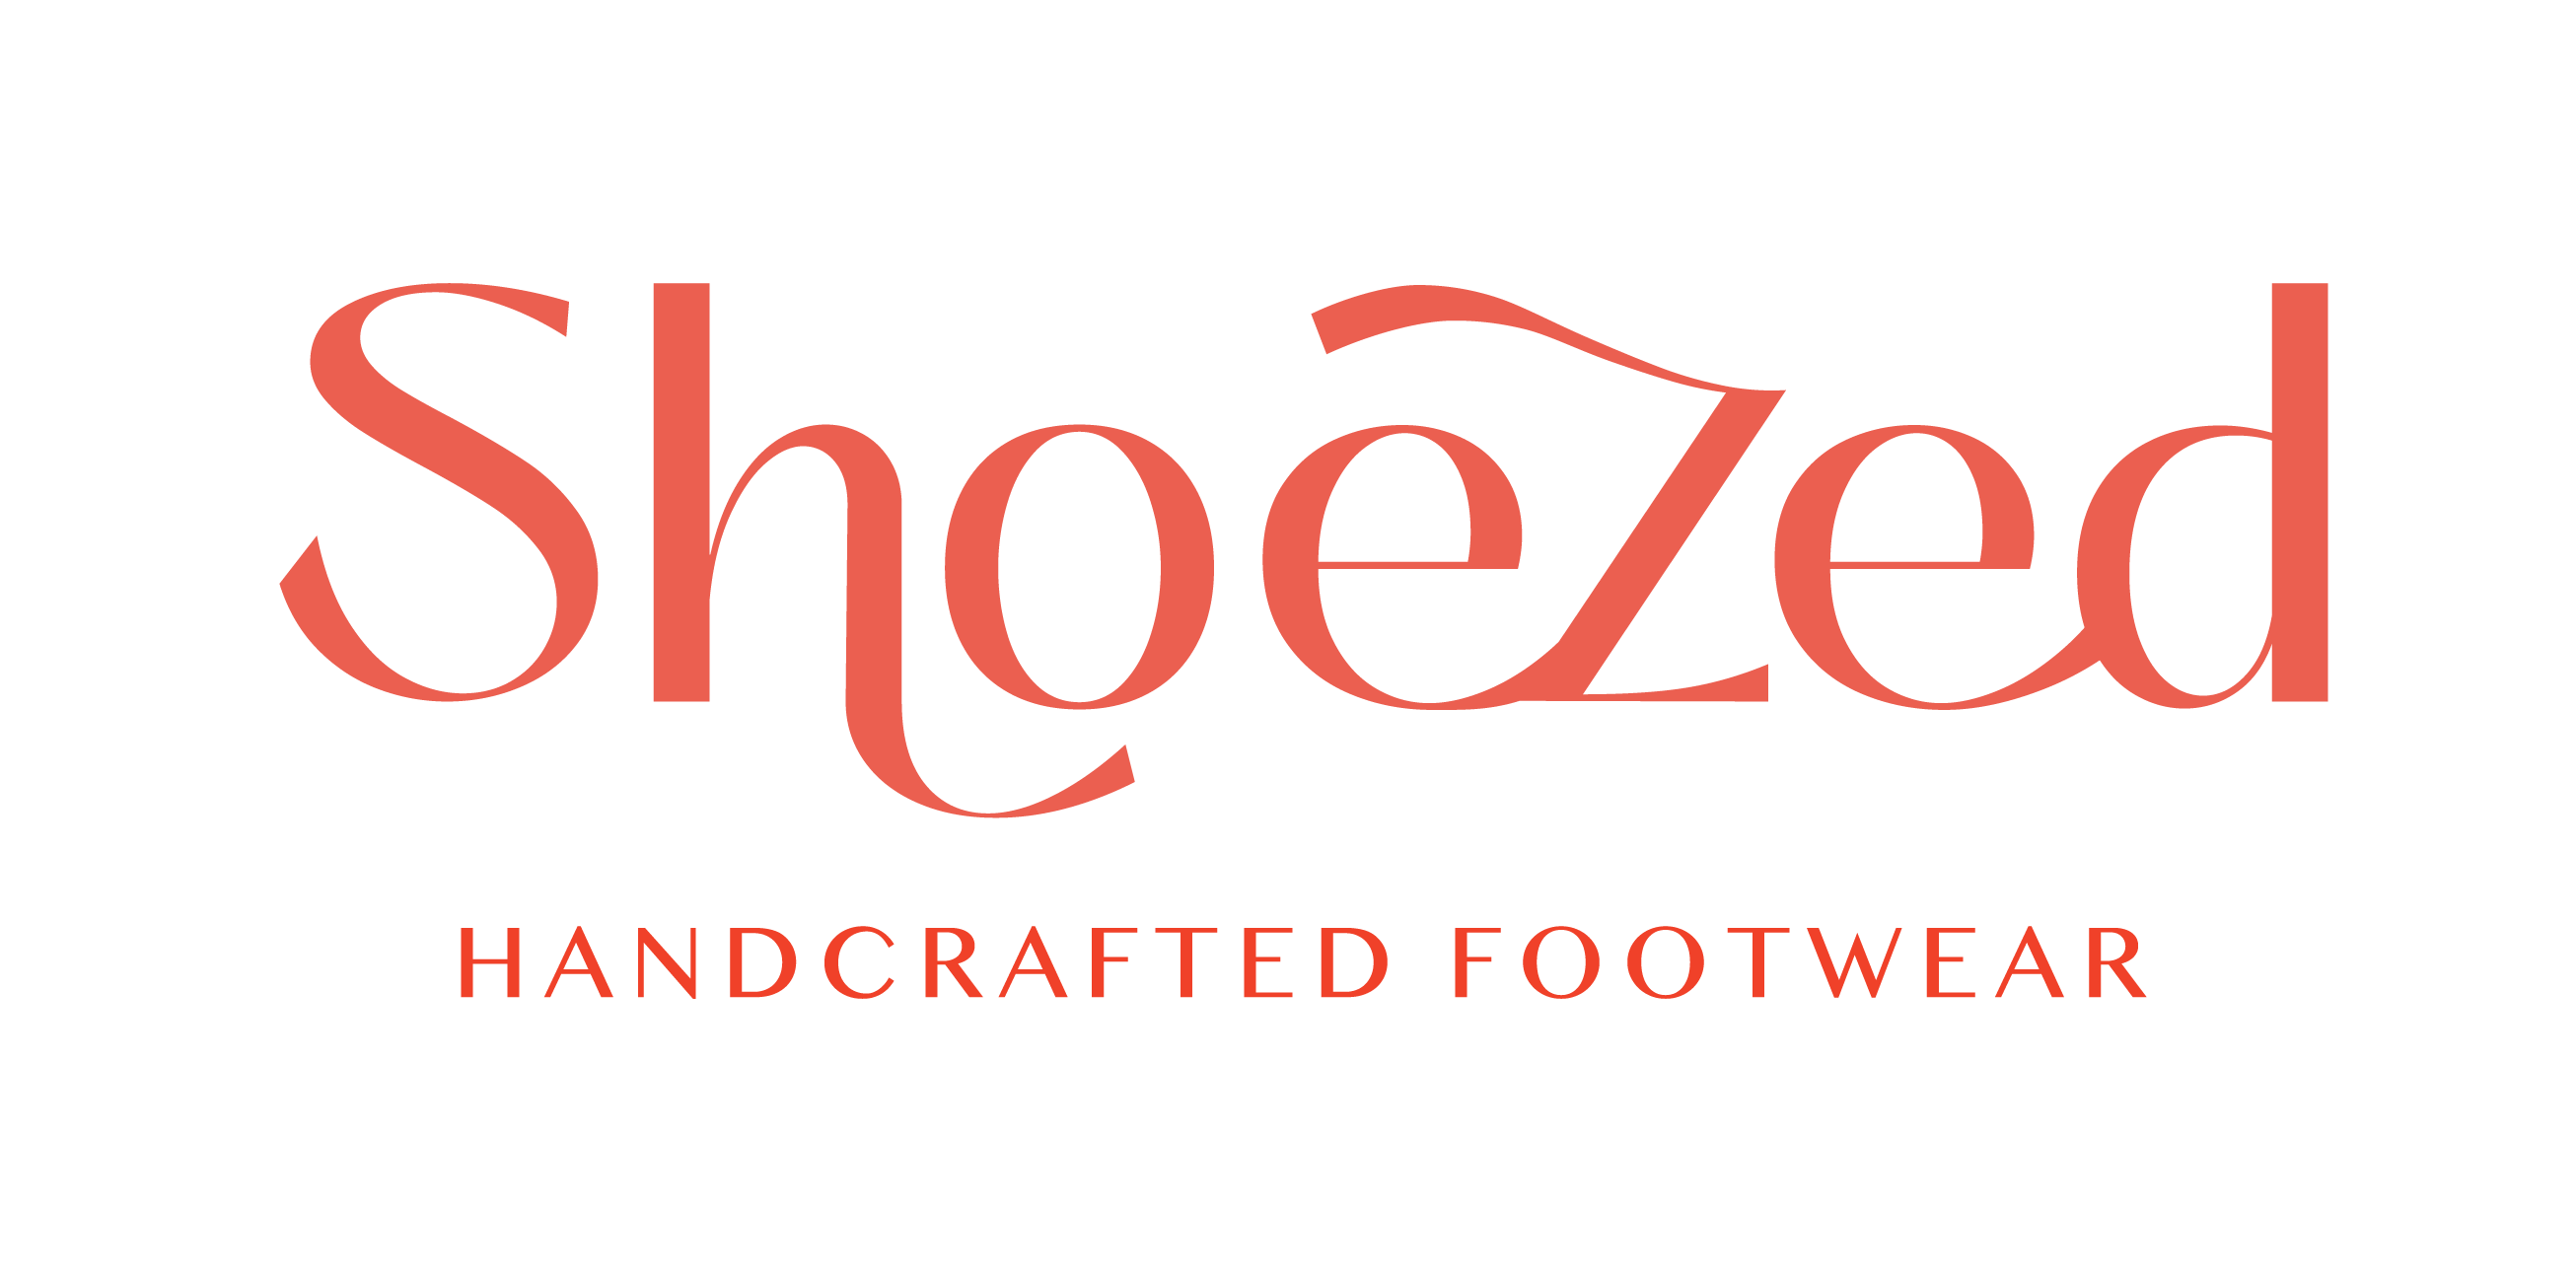 Shoe|Zed